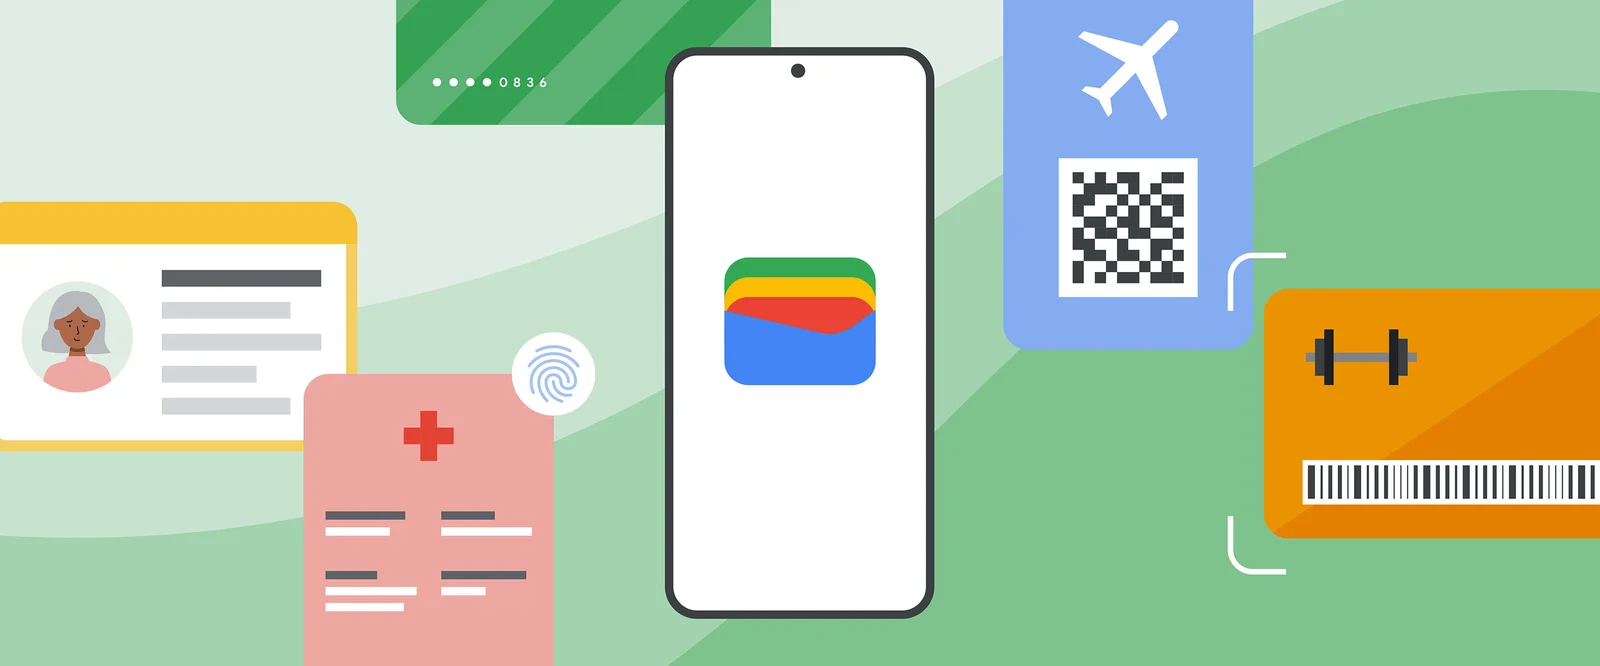 Google Wallet potrebbe presto supportare il passaporto elettronico